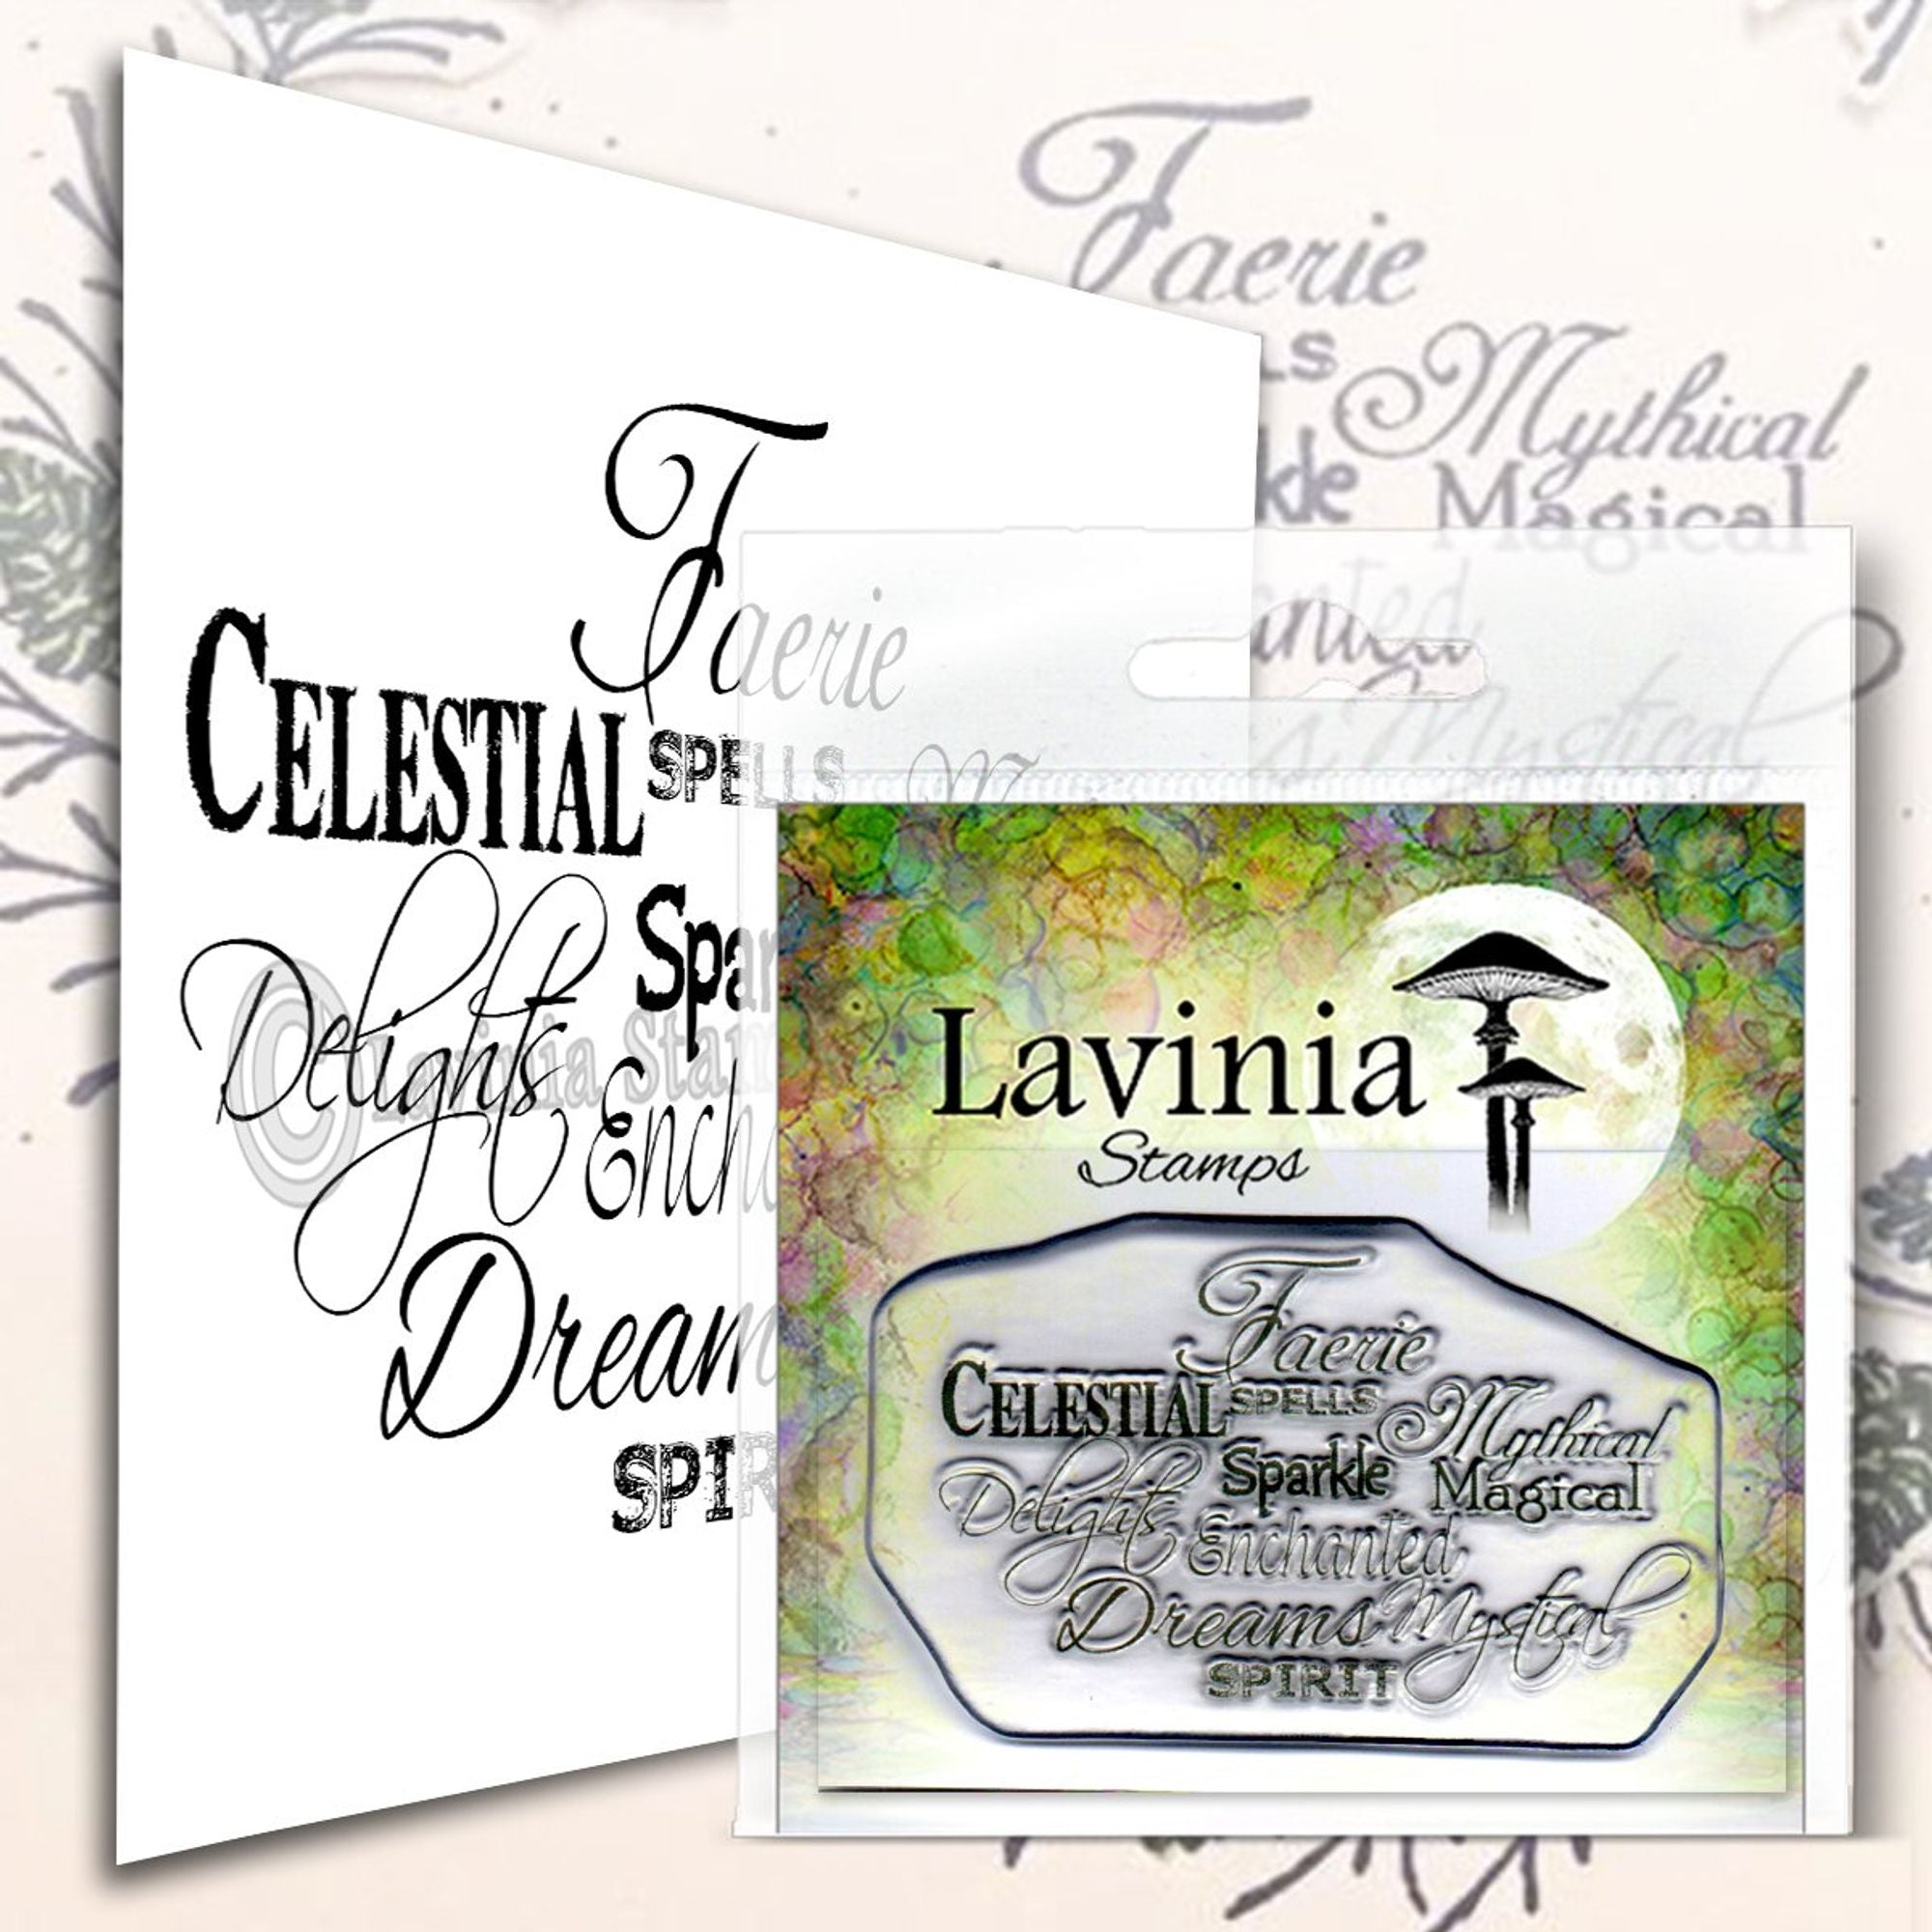 Lavinia Stamp - Faerie Spells